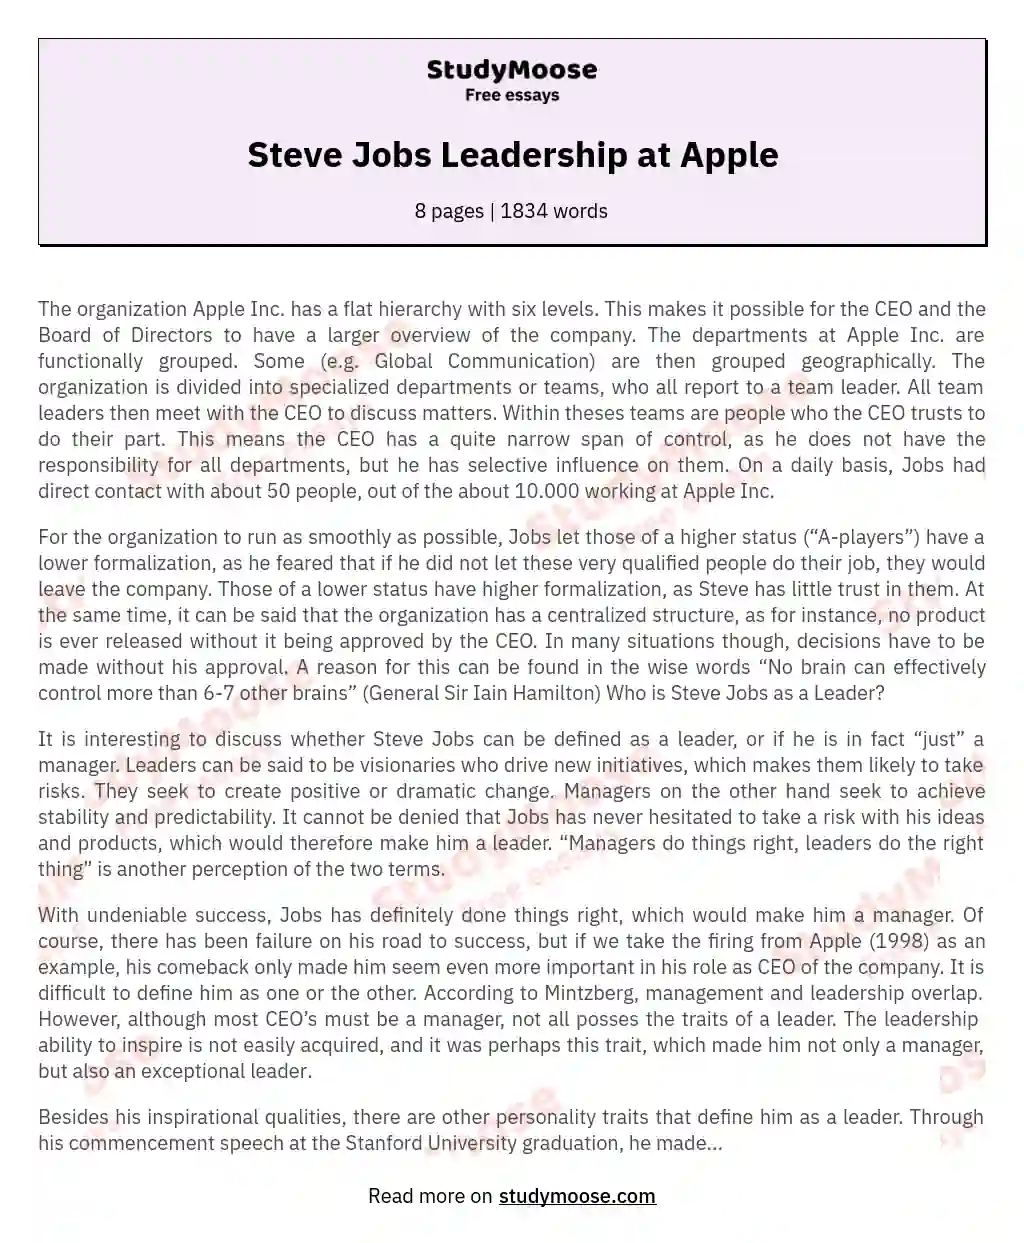 Steve Jobs Leadership at Apple